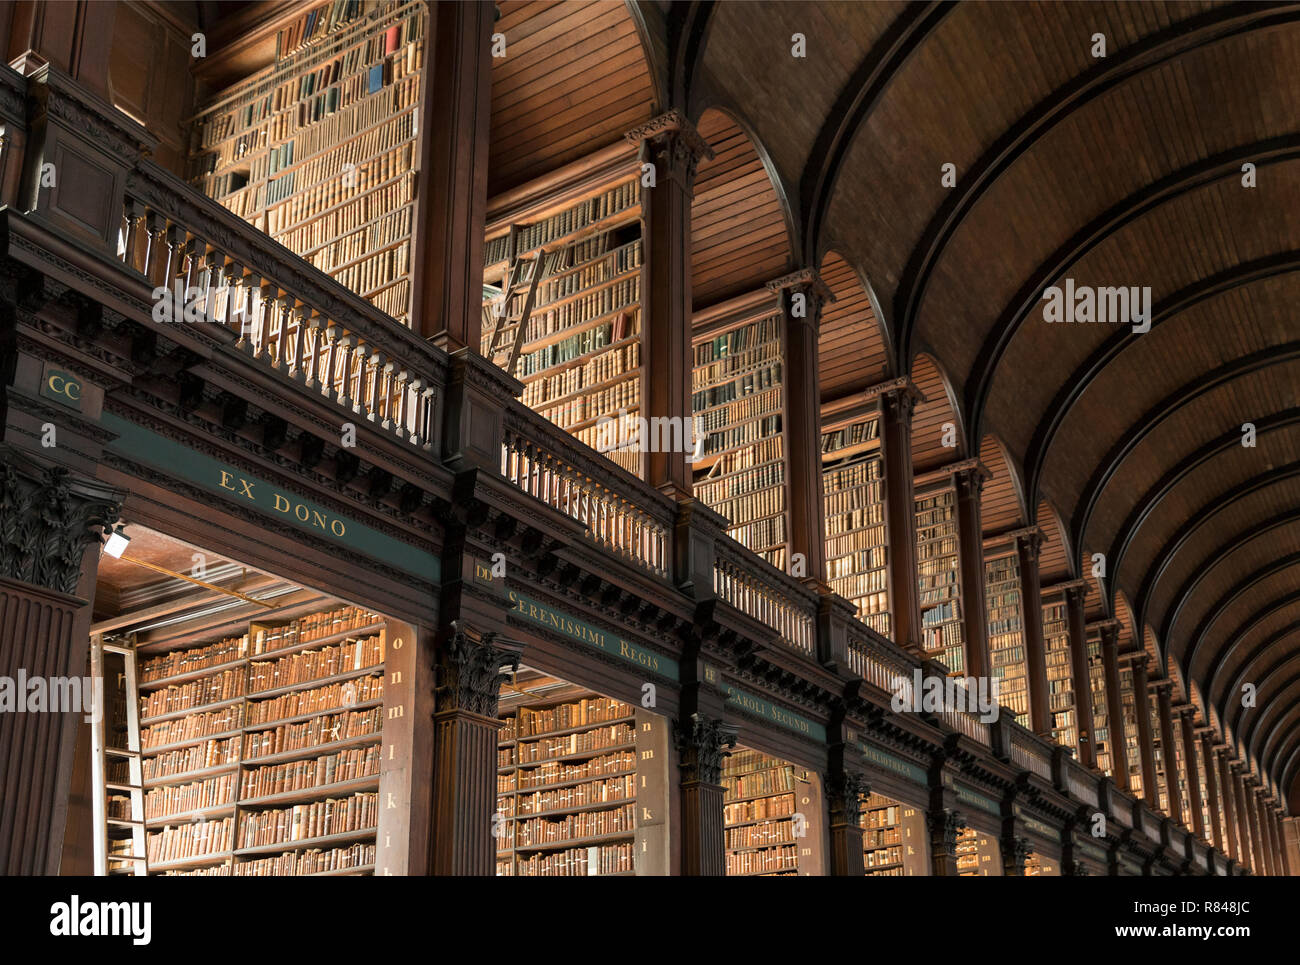 Irland, Dublin, Trinity College Dublin, Buch von Kells alte Bibliothek Stockfoto